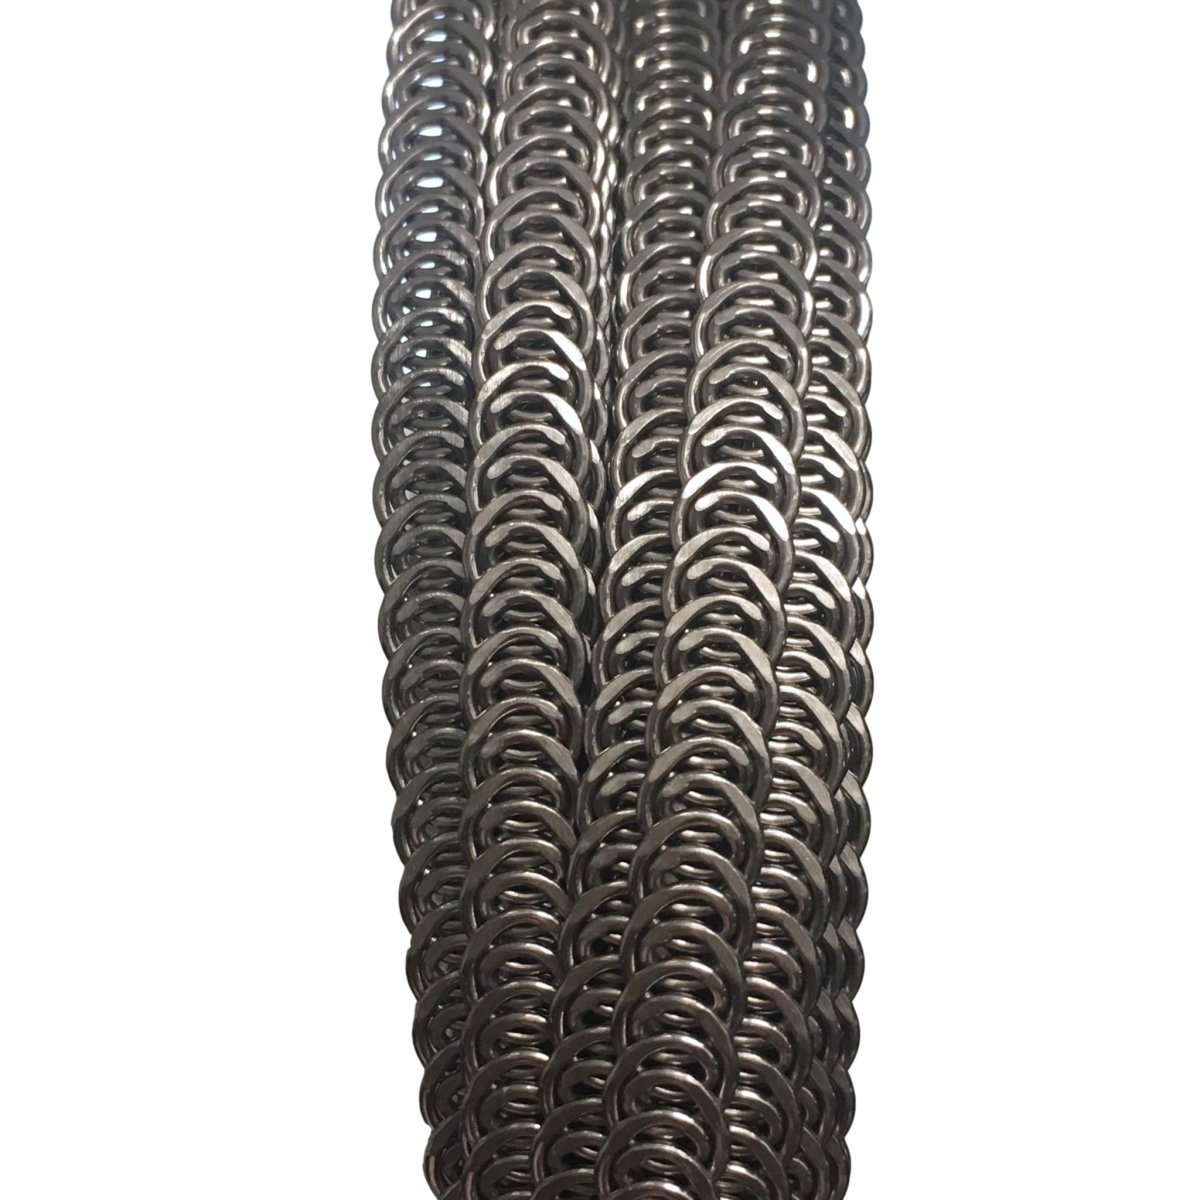 Spiral Steel Boning Roll  - 6mm or 10mm wide